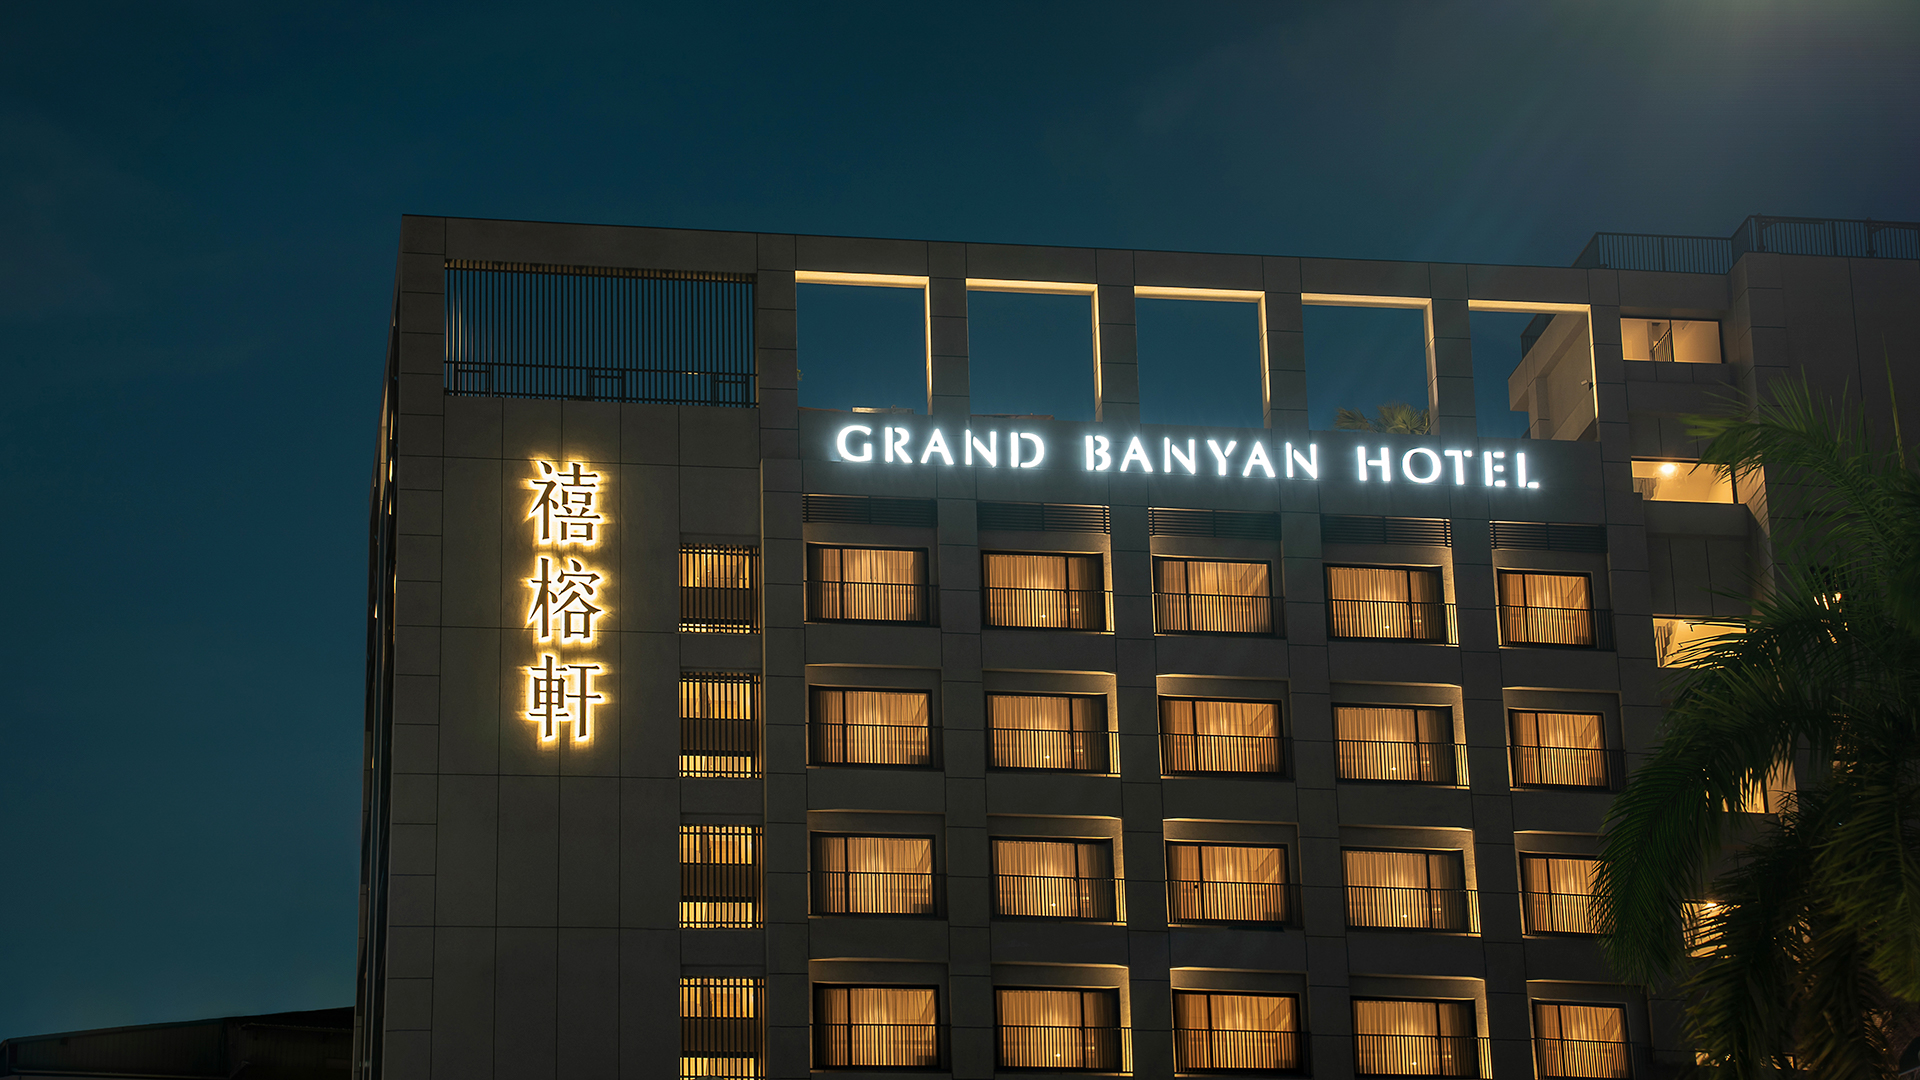 GRAND BANYAN HOTEL